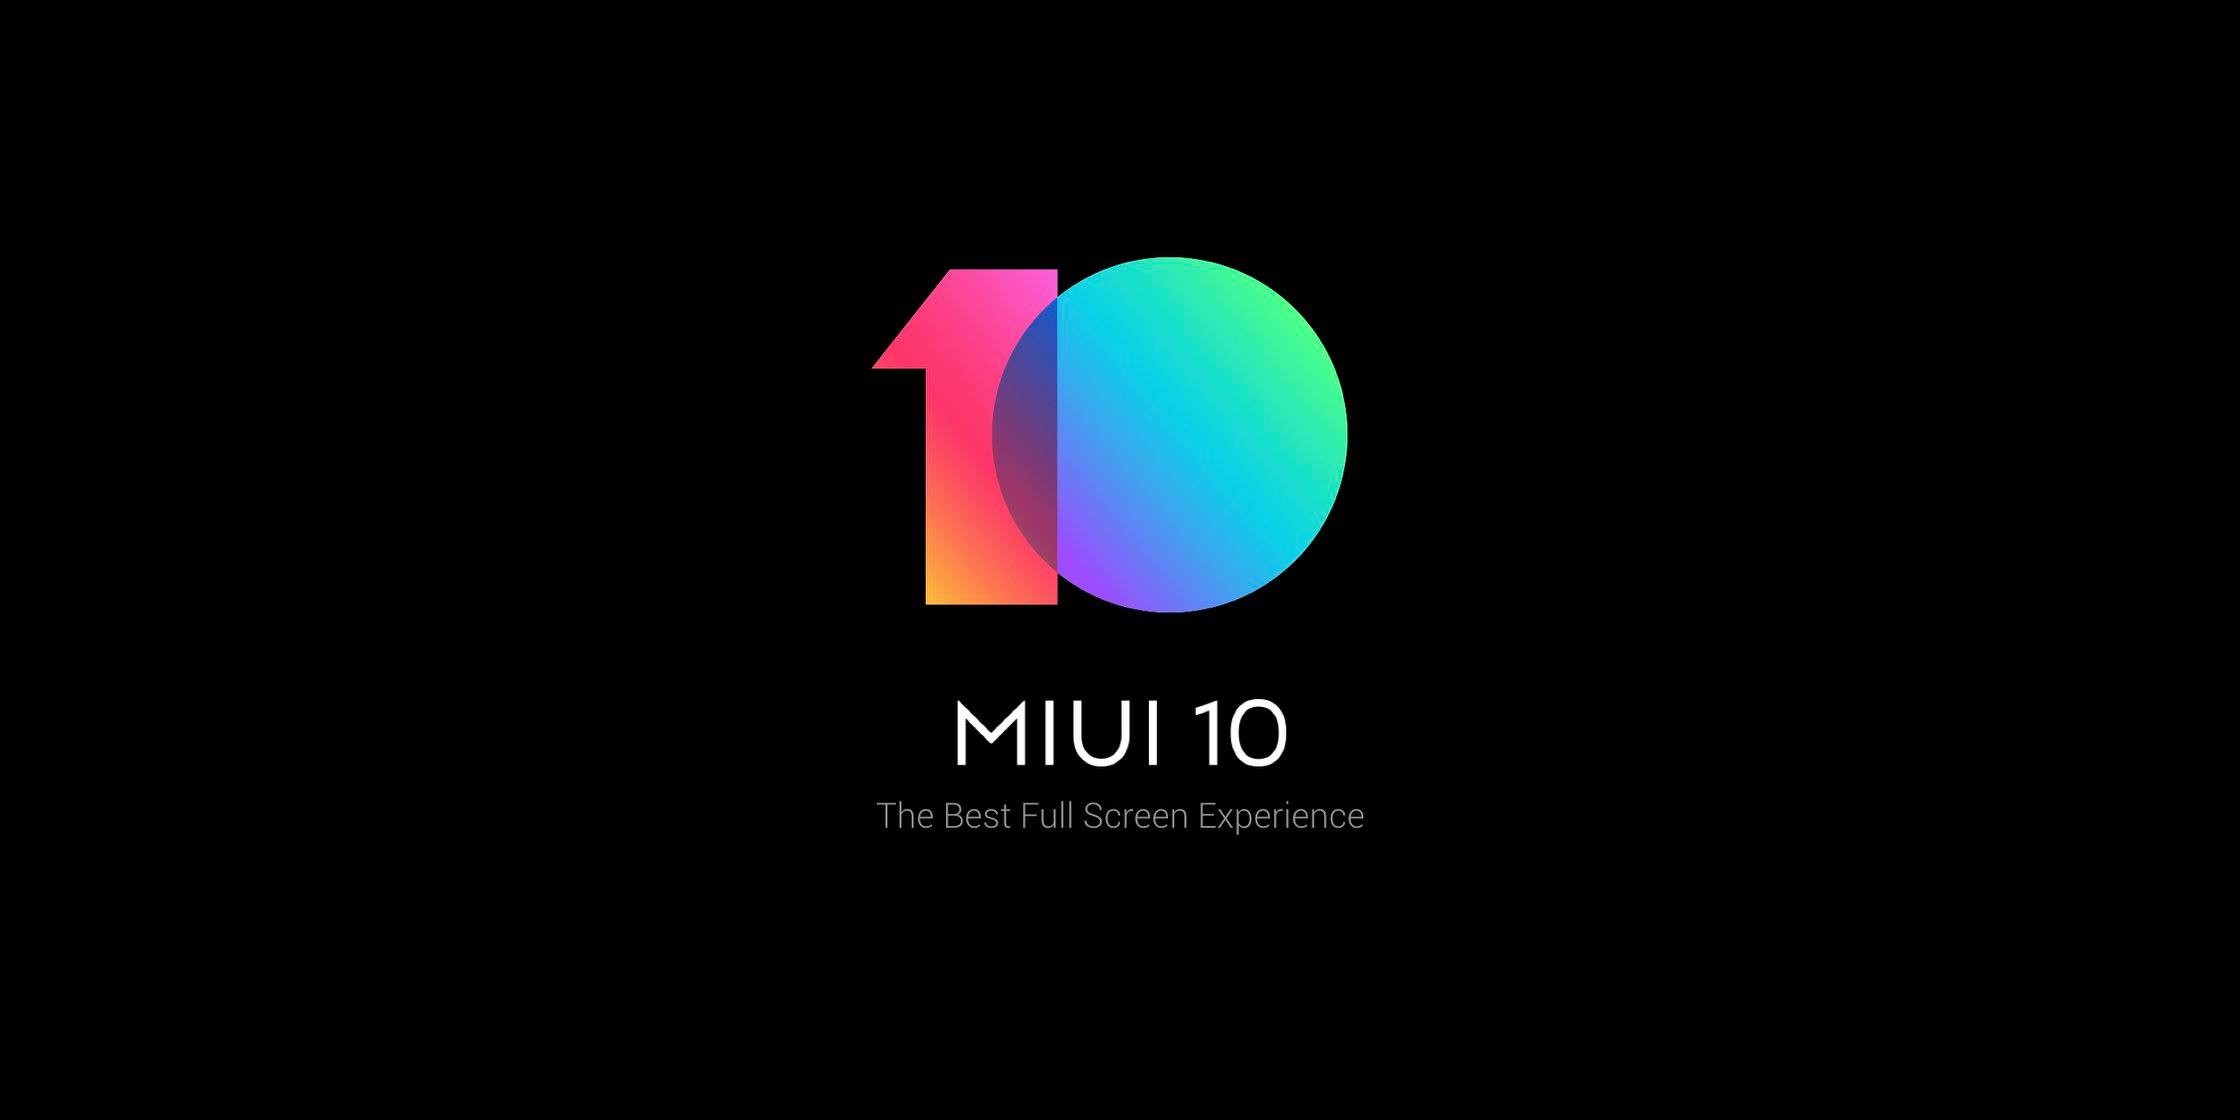 Обновление MIUI 10: скорость, жесты и AI